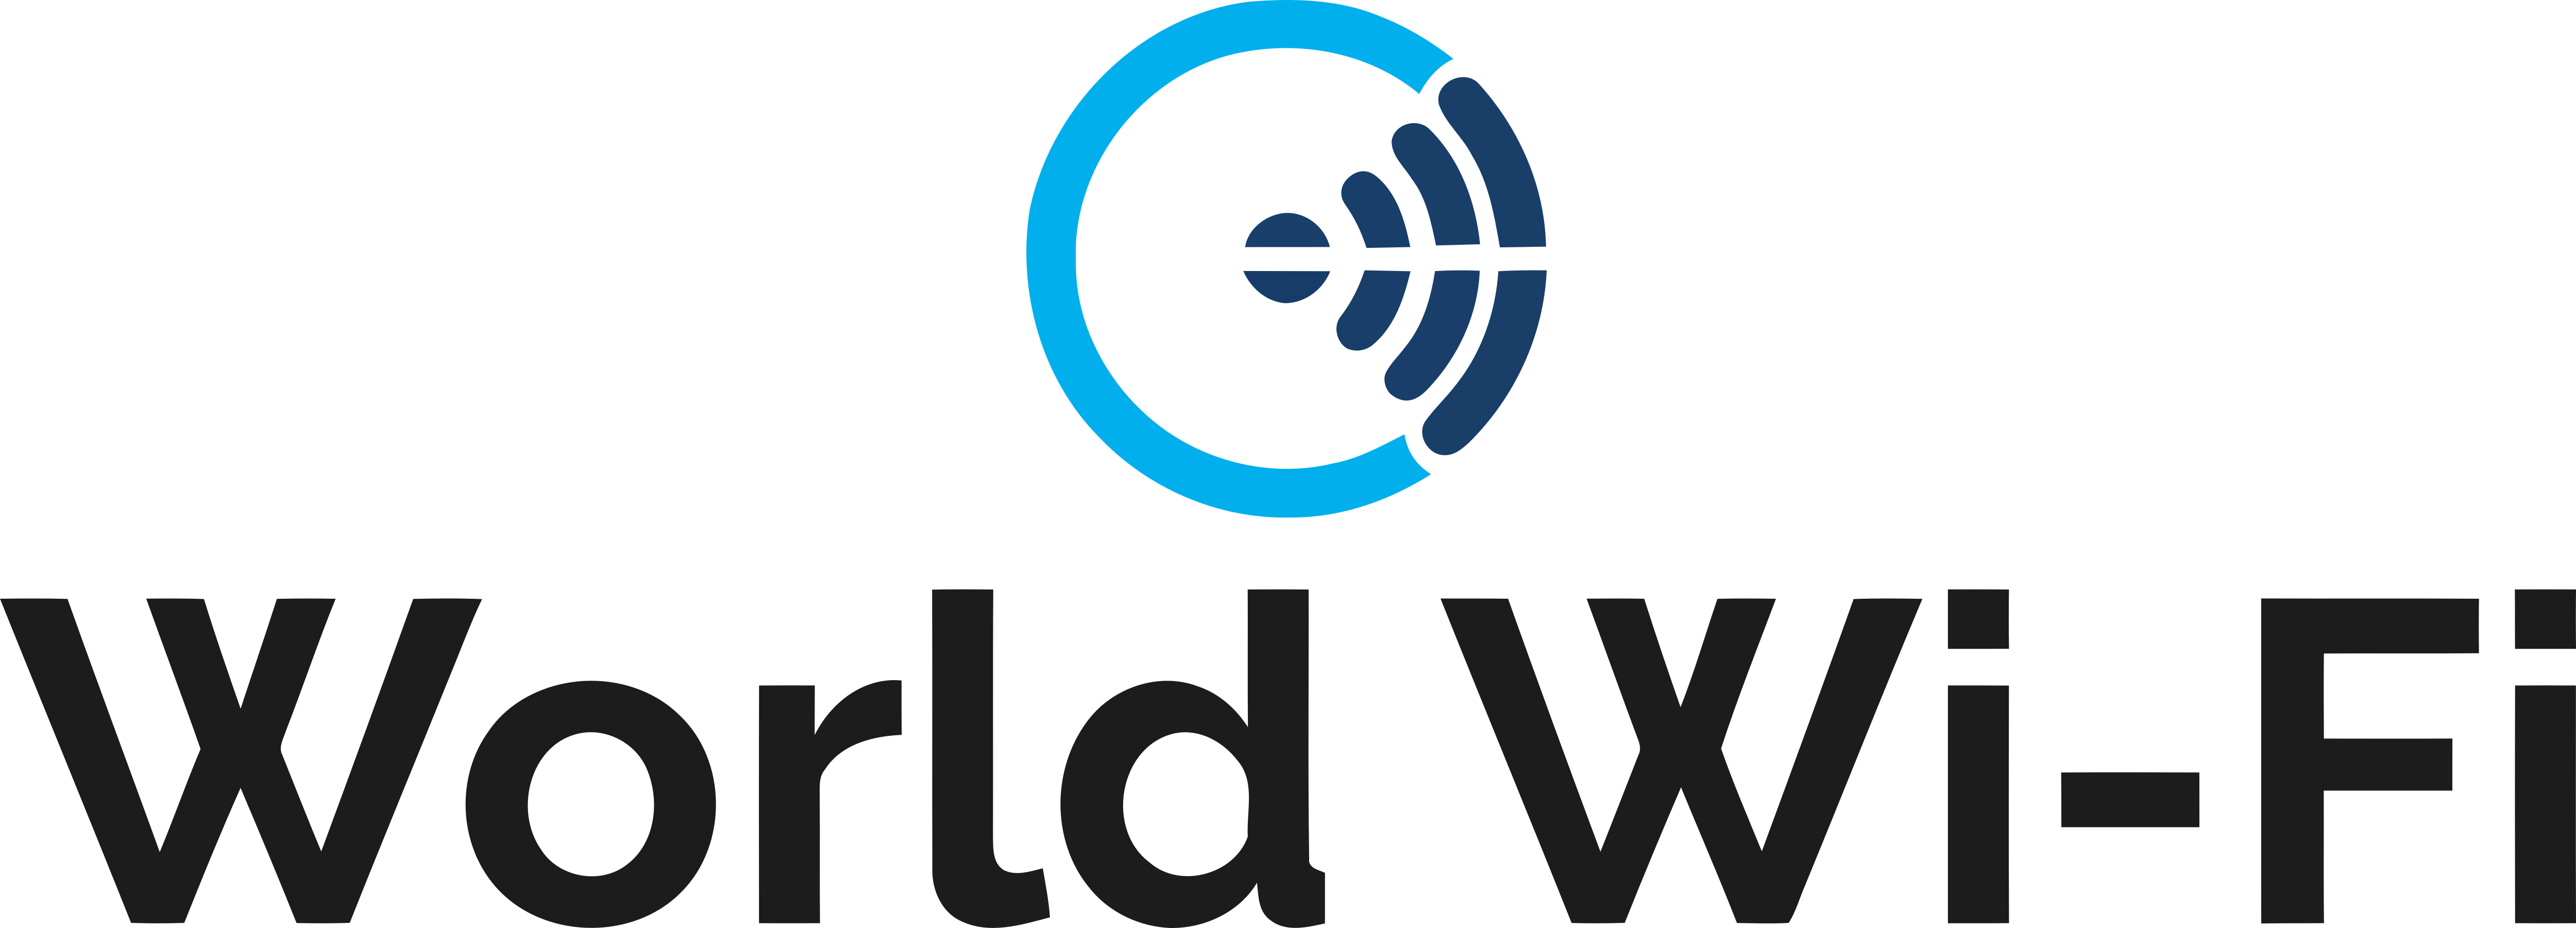 World Wi Fi Logos Download